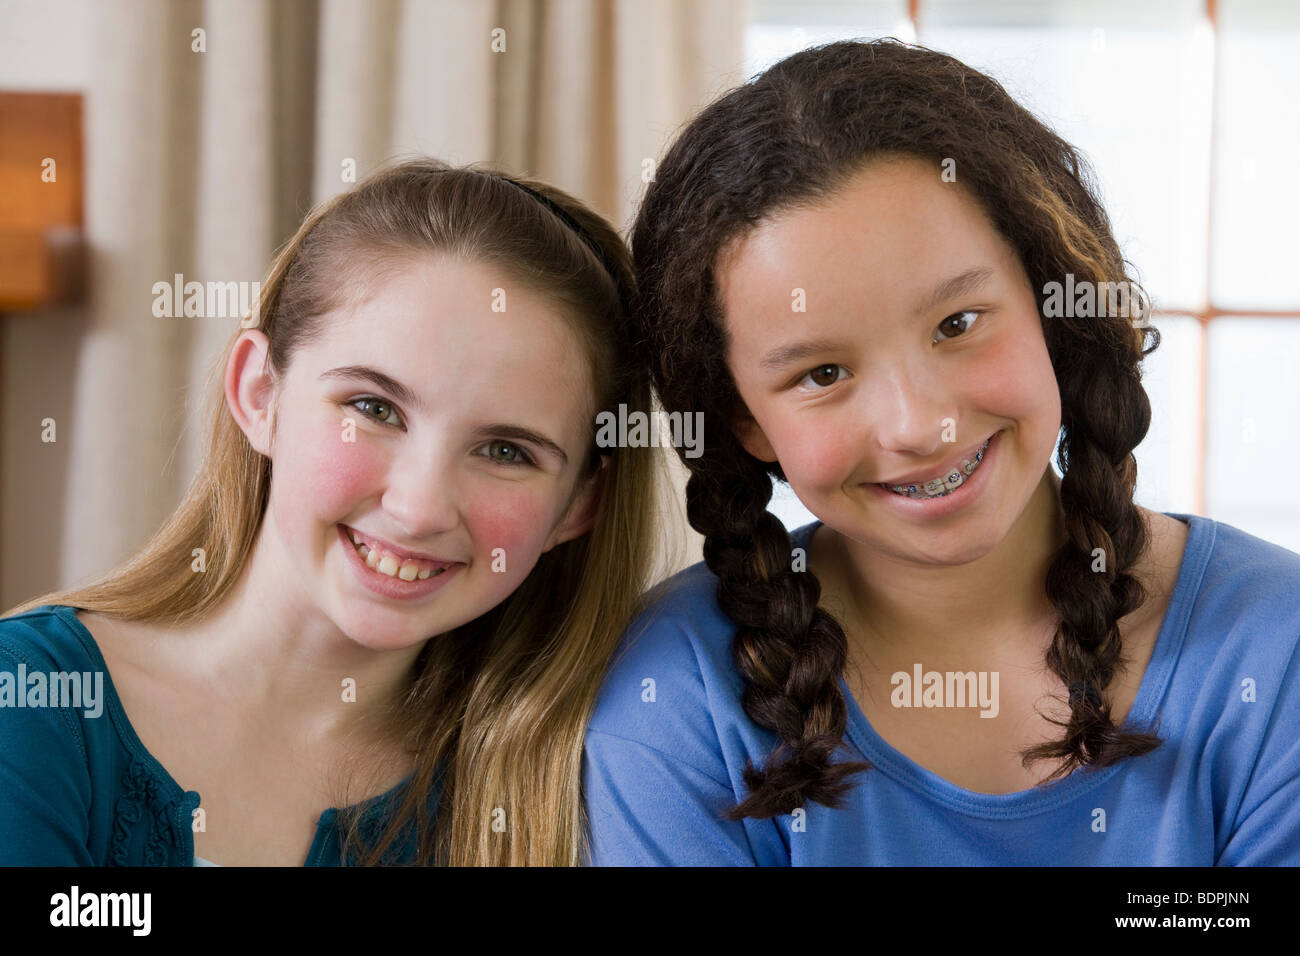 Portrait de deux girls smiling Banque D'Images